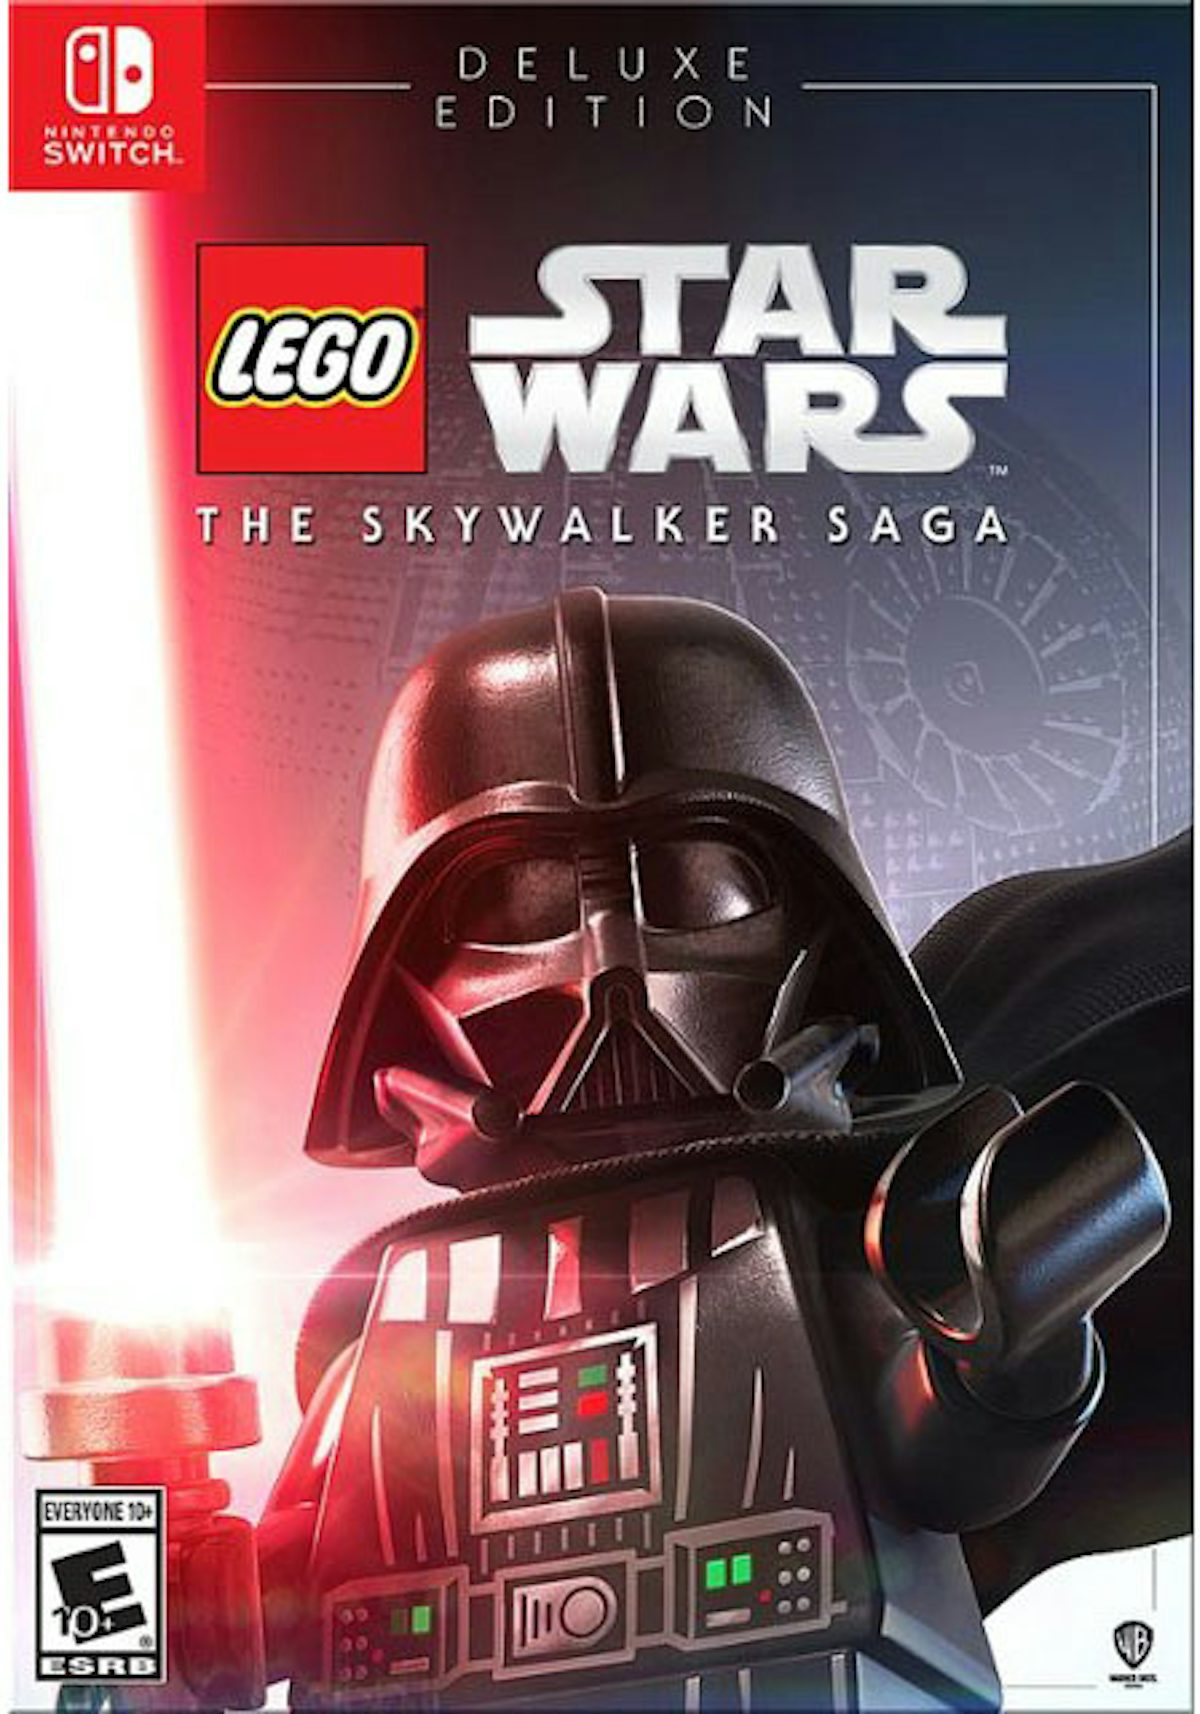 Revendre Lego Star Wars: La Saga Skywalker Deluxe (Nintendo Switch